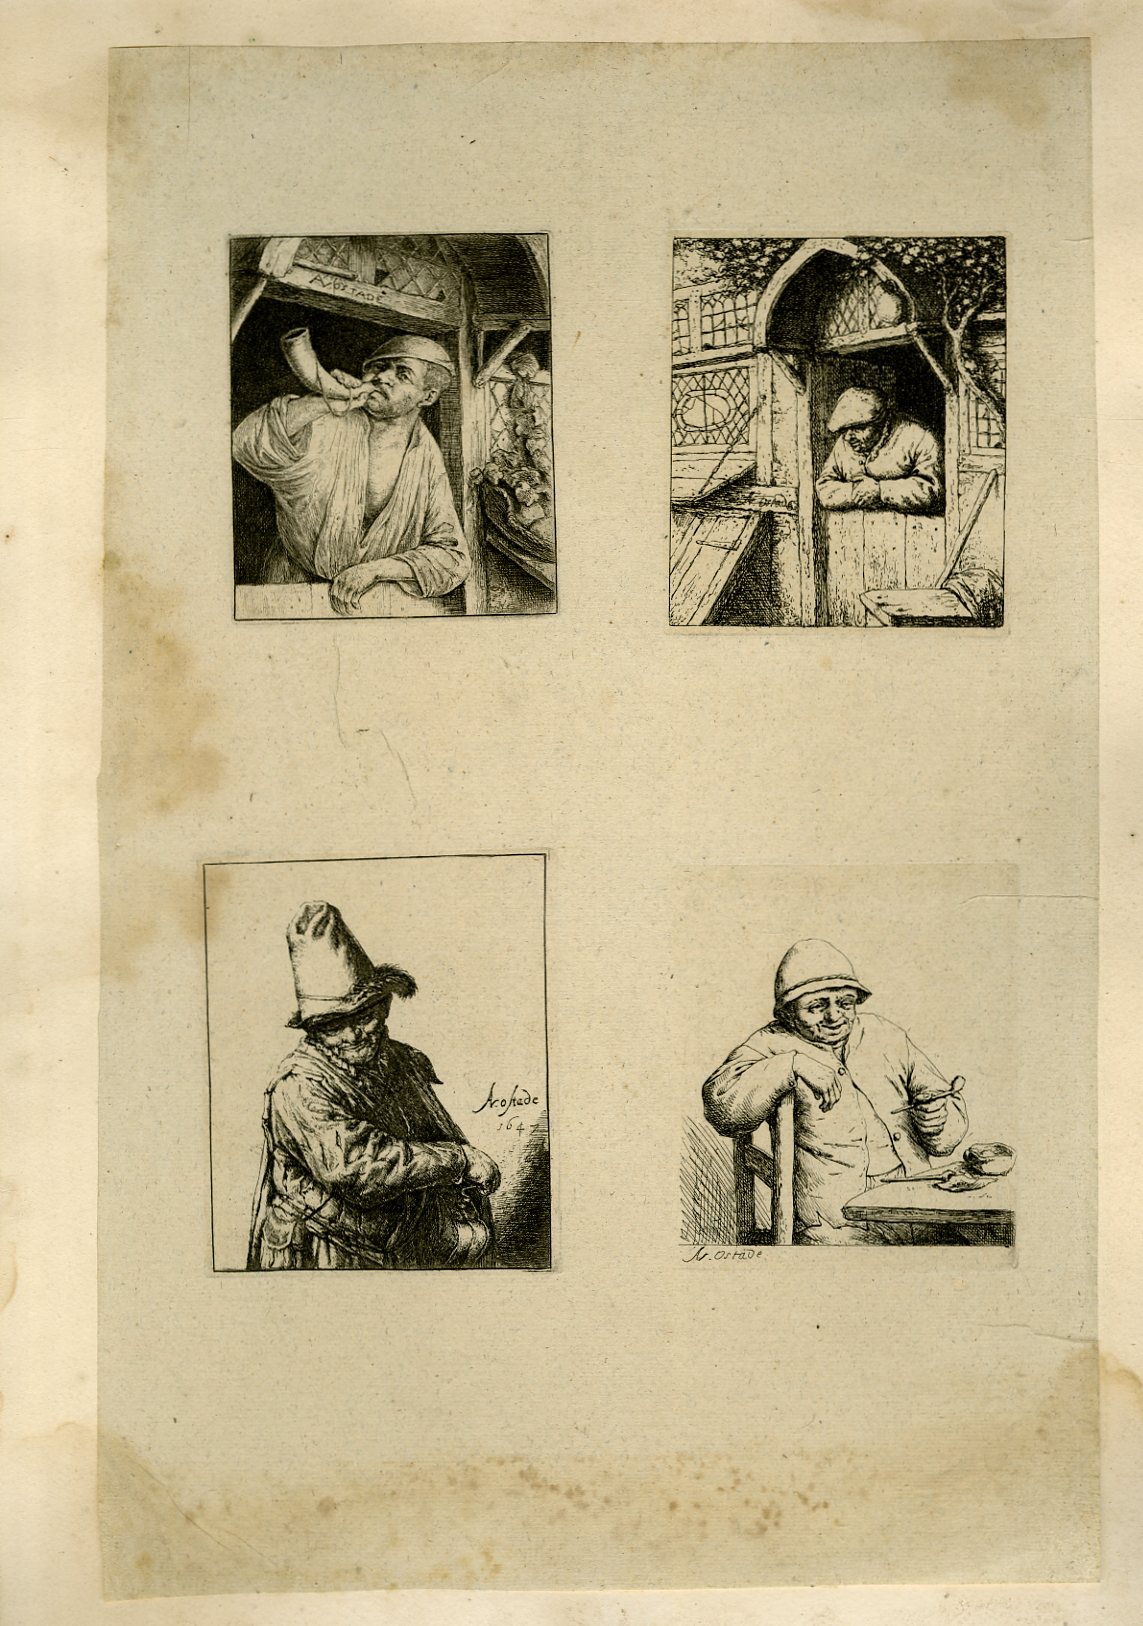 Planche illustre de 4 gravures originales, chacunes reprsentant un villageois dans diverses situations : en jouant de la corne, fumant la pipe , sur le perron de sa maison, fouillant dans son sac.